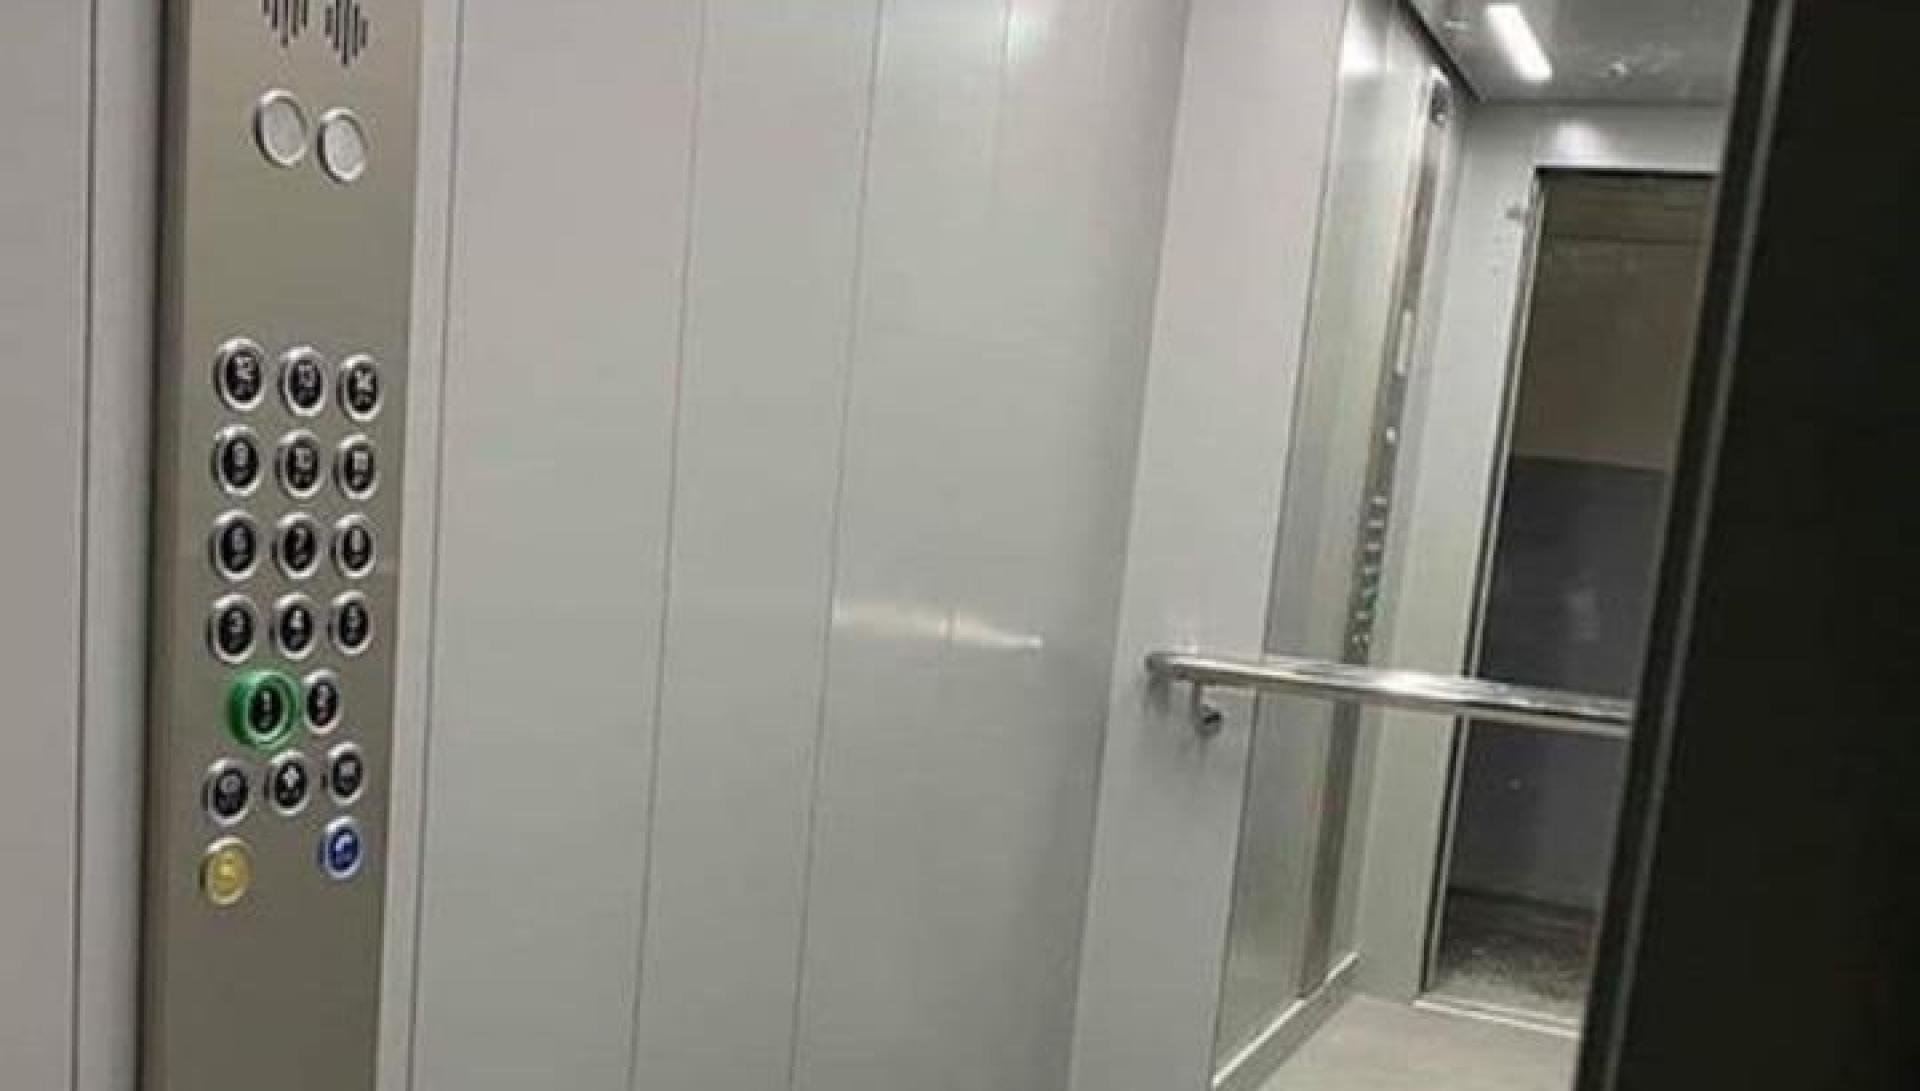 Նոր վերելակների առաջին խմբաքանակն արդեն Երևանում է. այս տարի կփոխվի 426 վերելակ